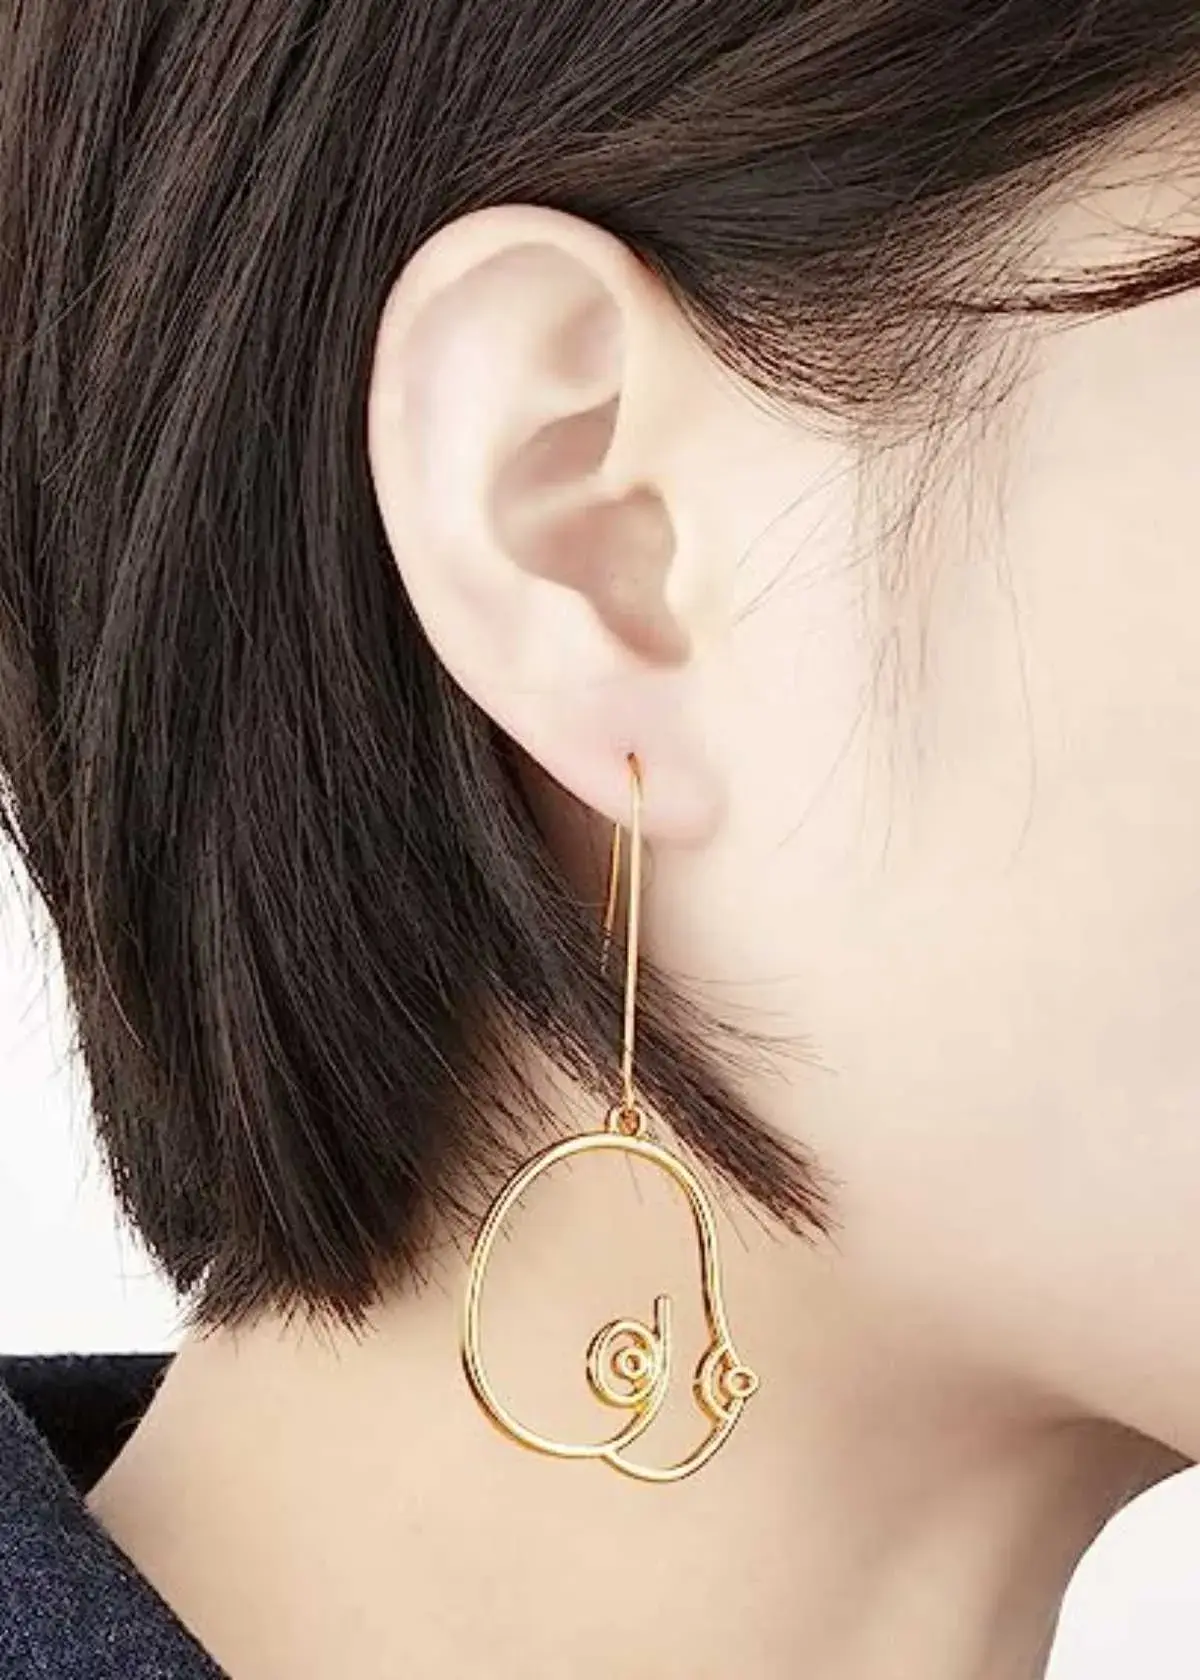 boob earrings